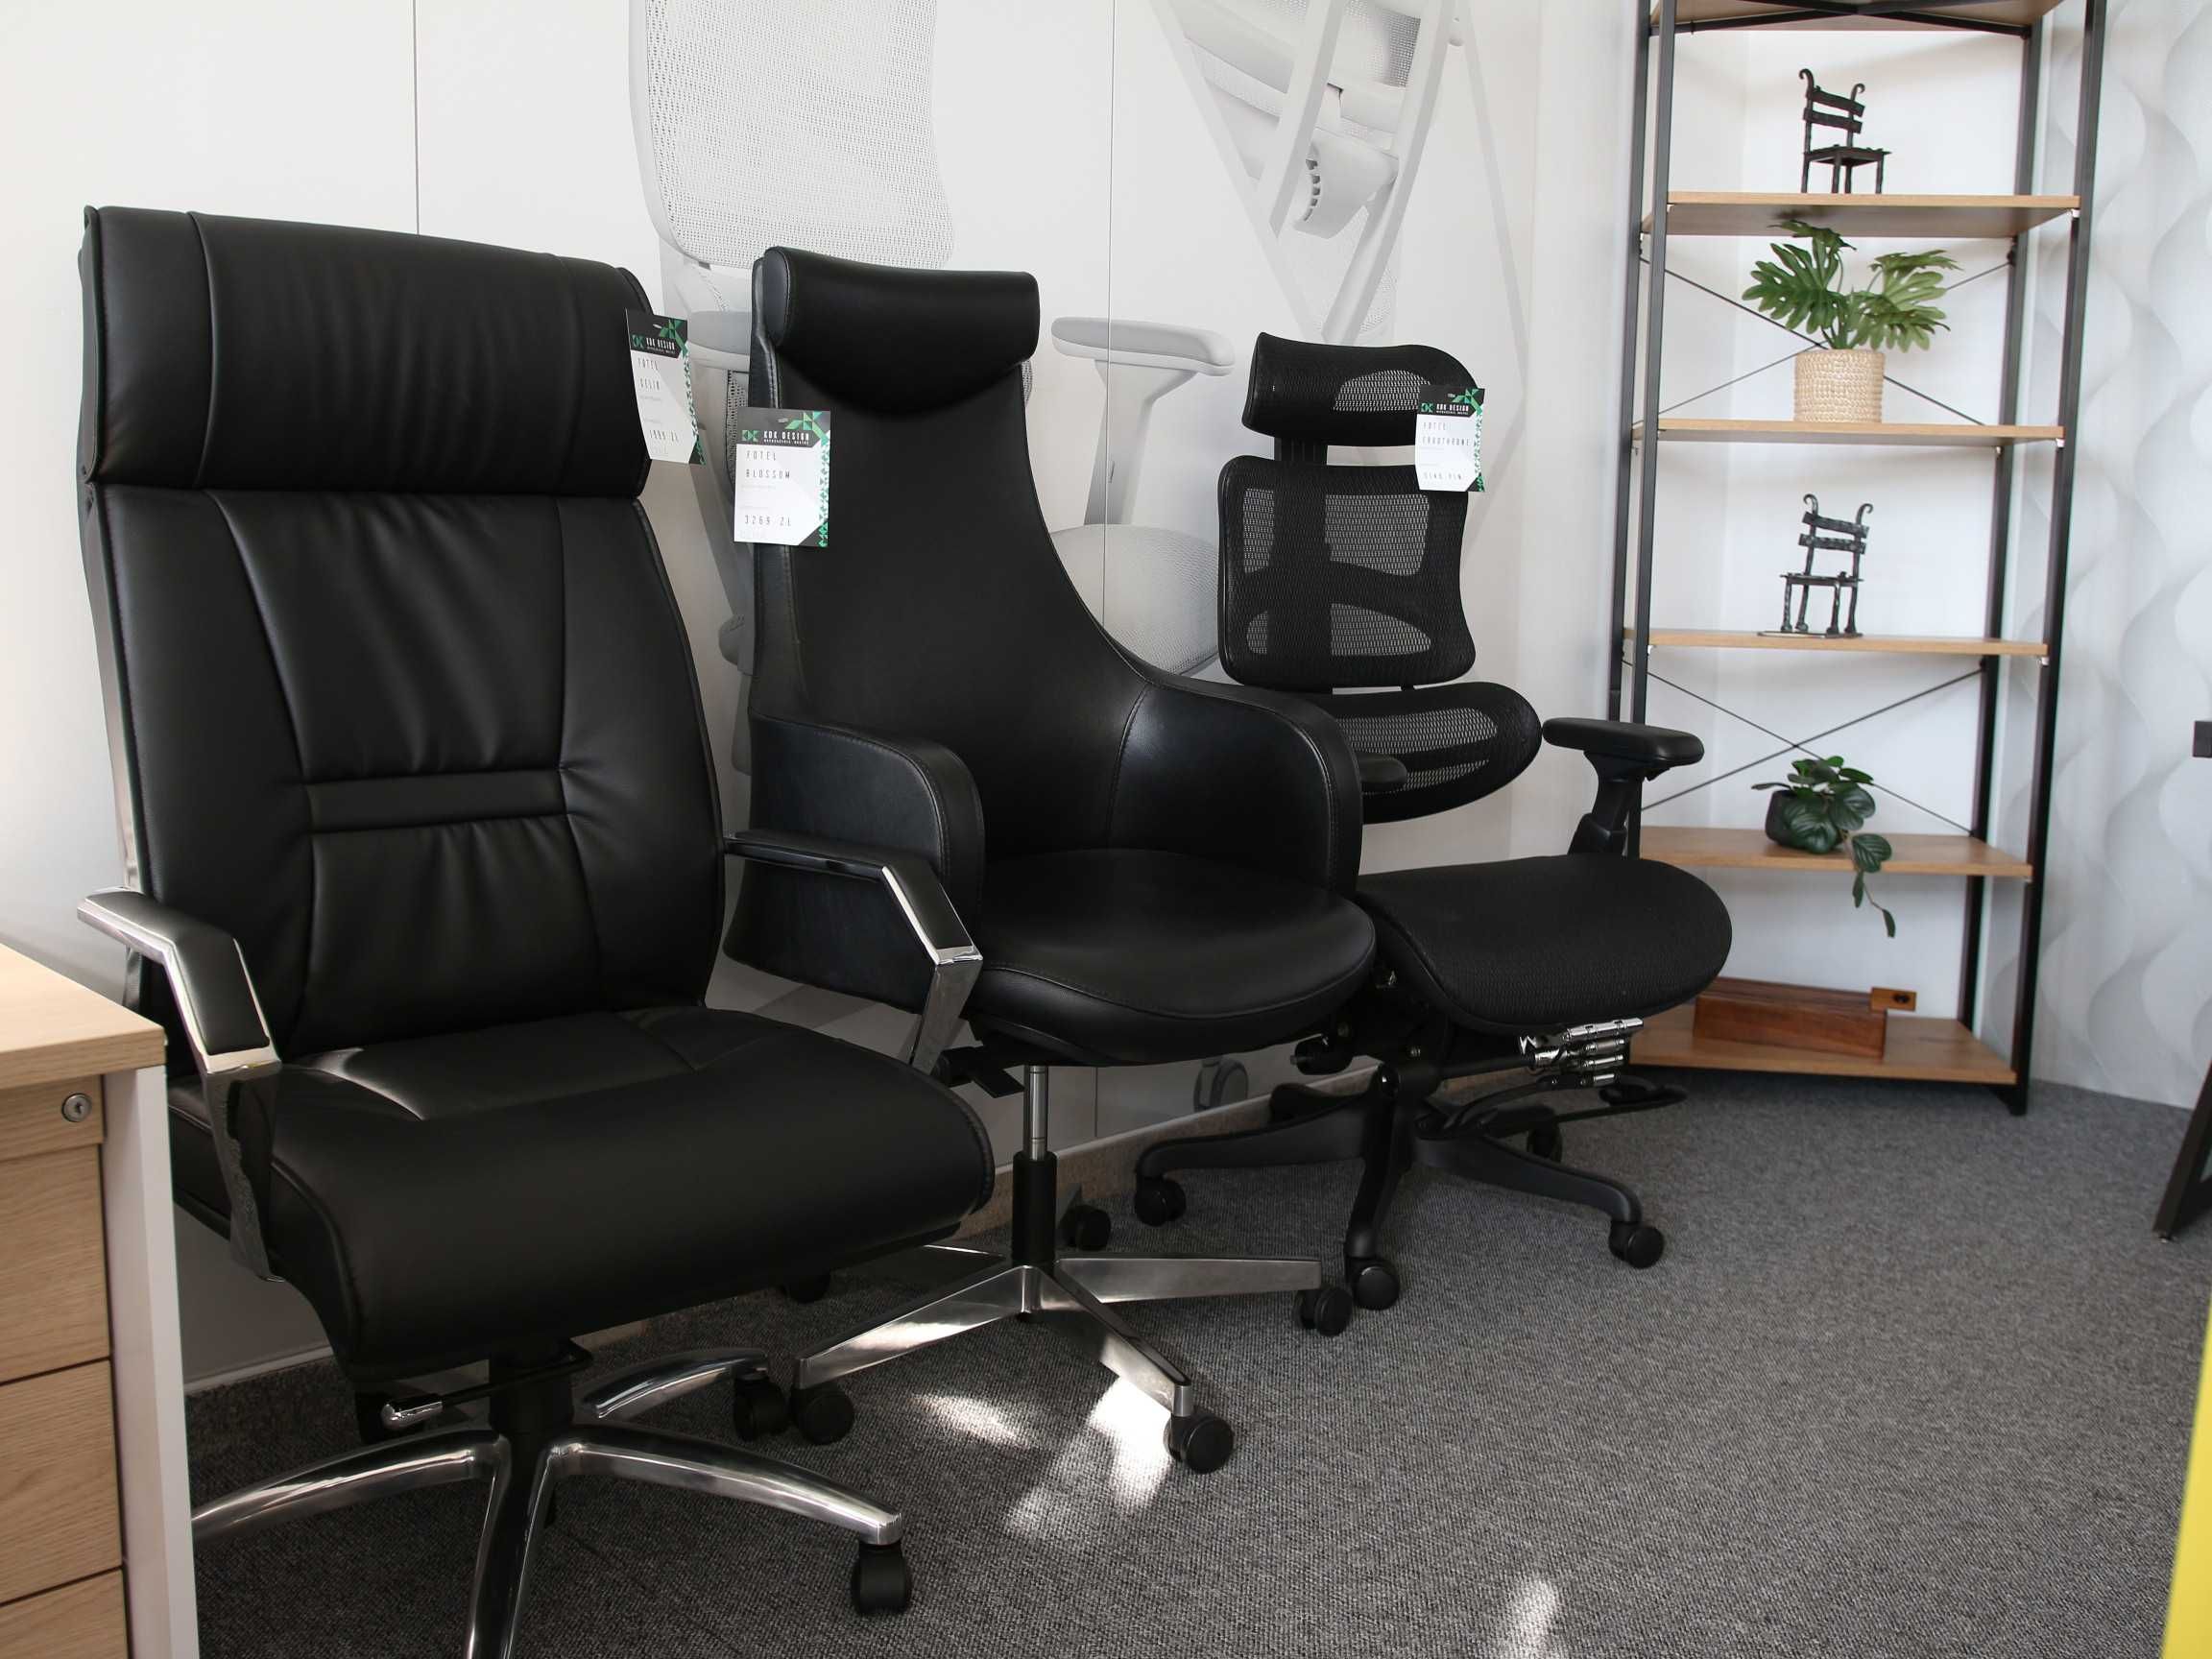 Fotele biurowe, ergonomiczne, obrotowe, krzesła do pracy, biurka, biur